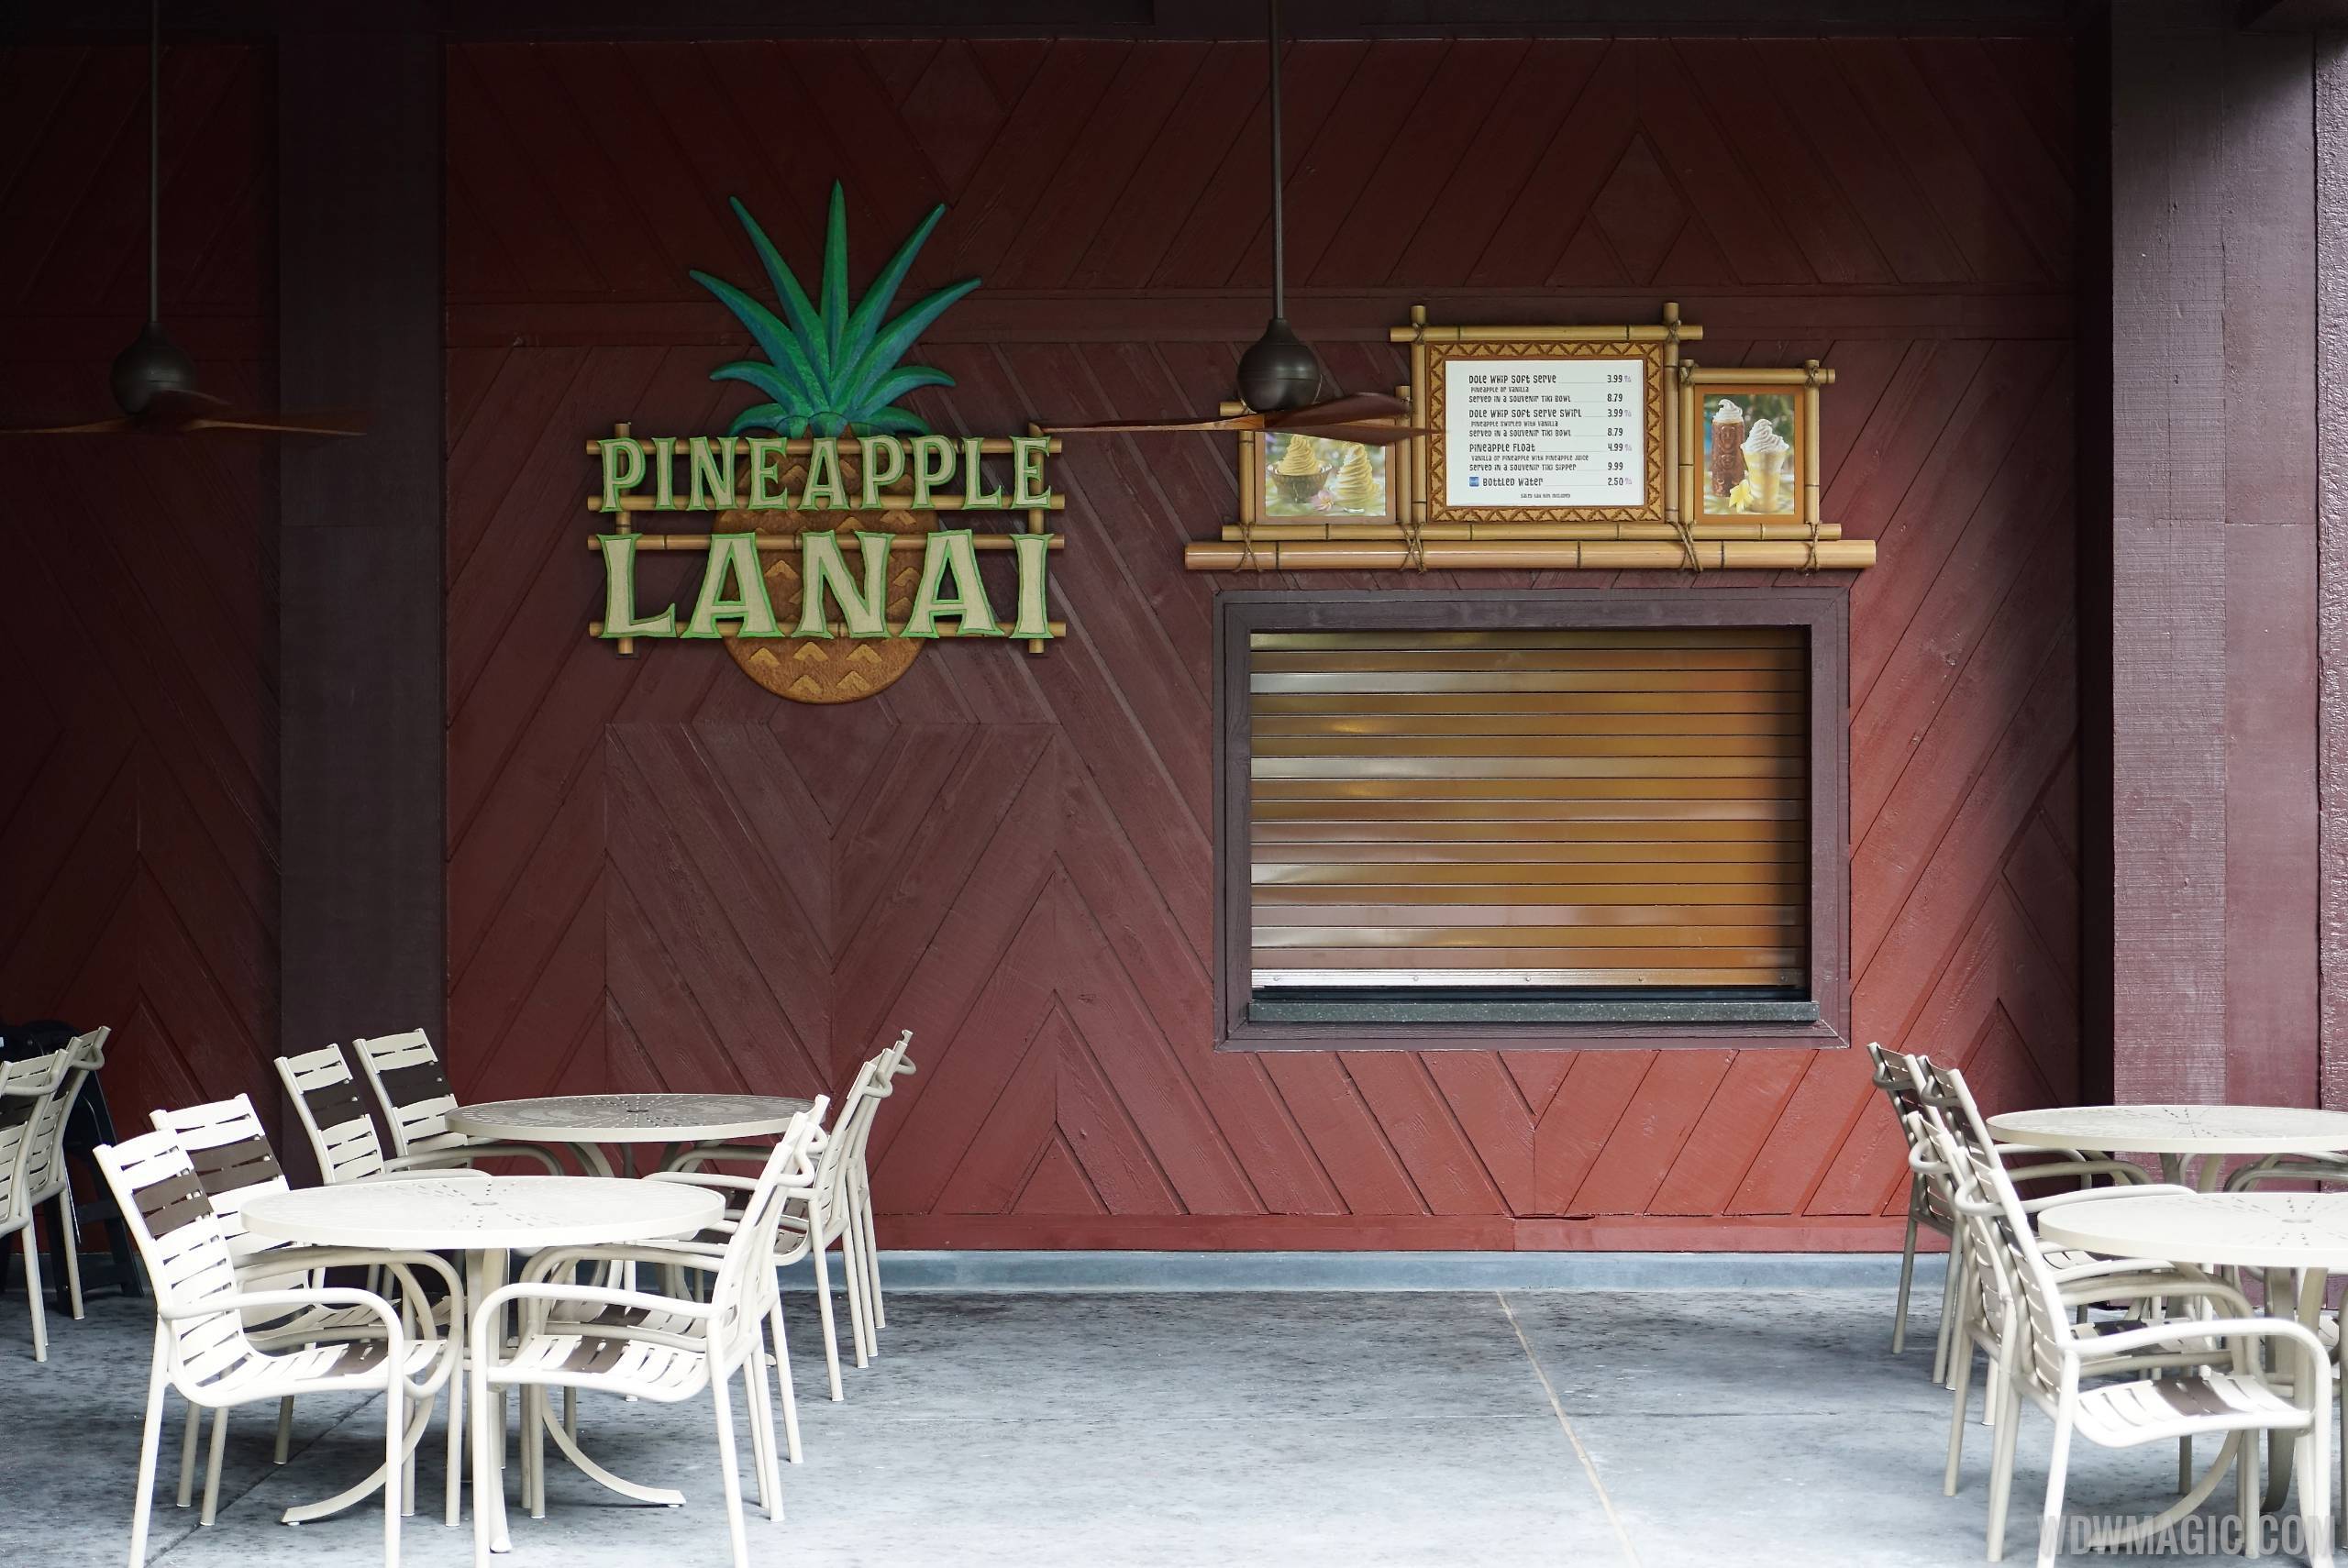 Pineapple Lanai kiosk and seating